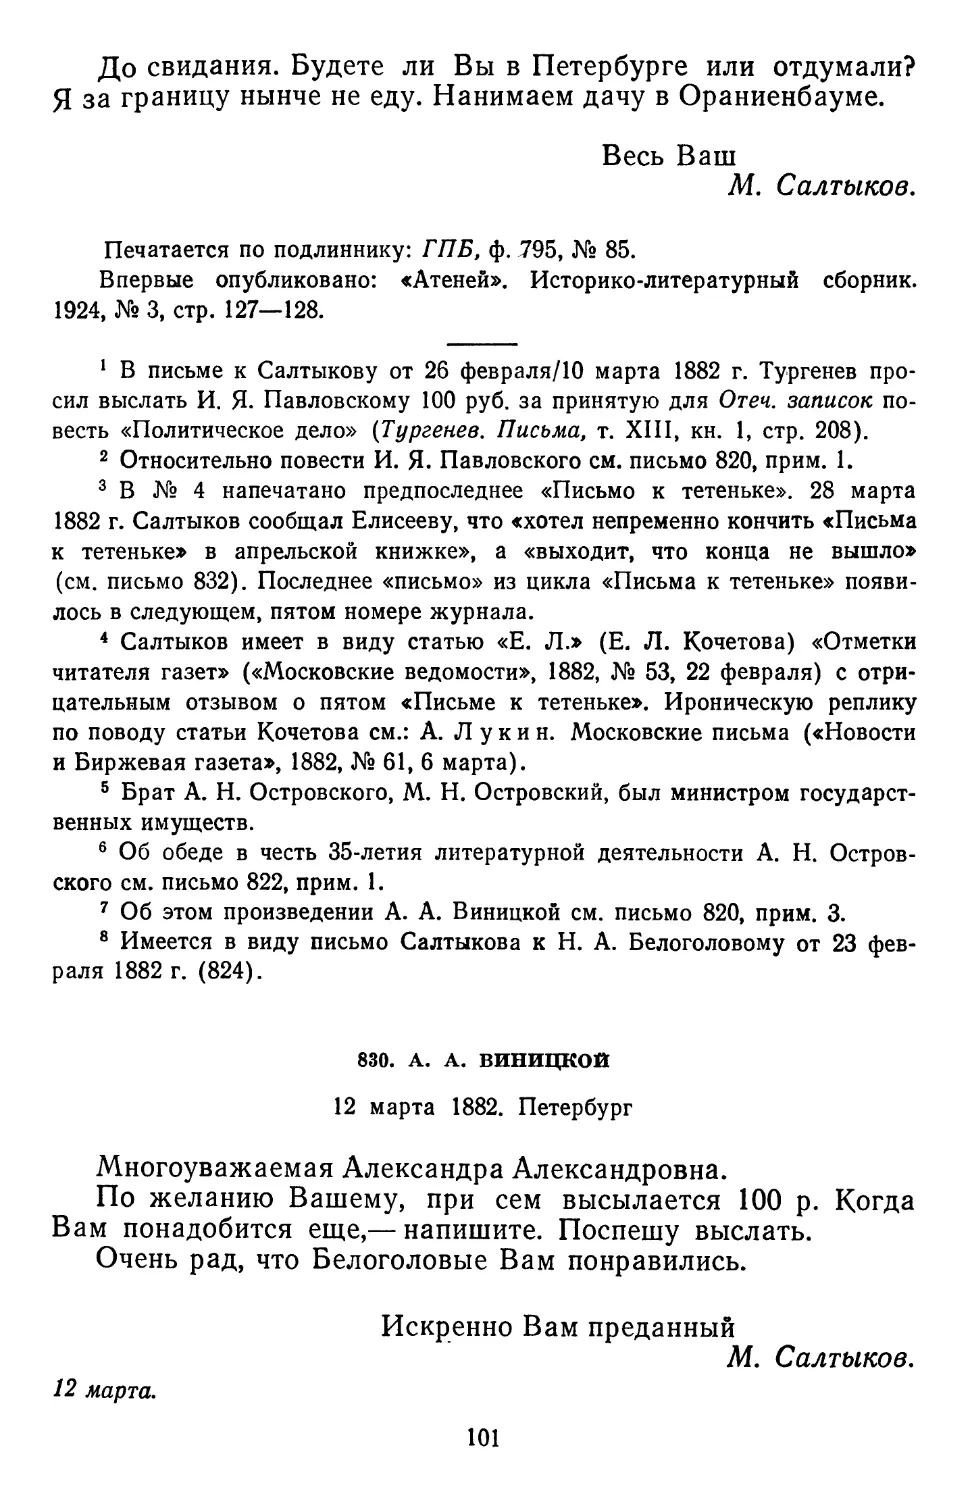 830.А. А.Виницкой. 12 марта 1882. Петербург